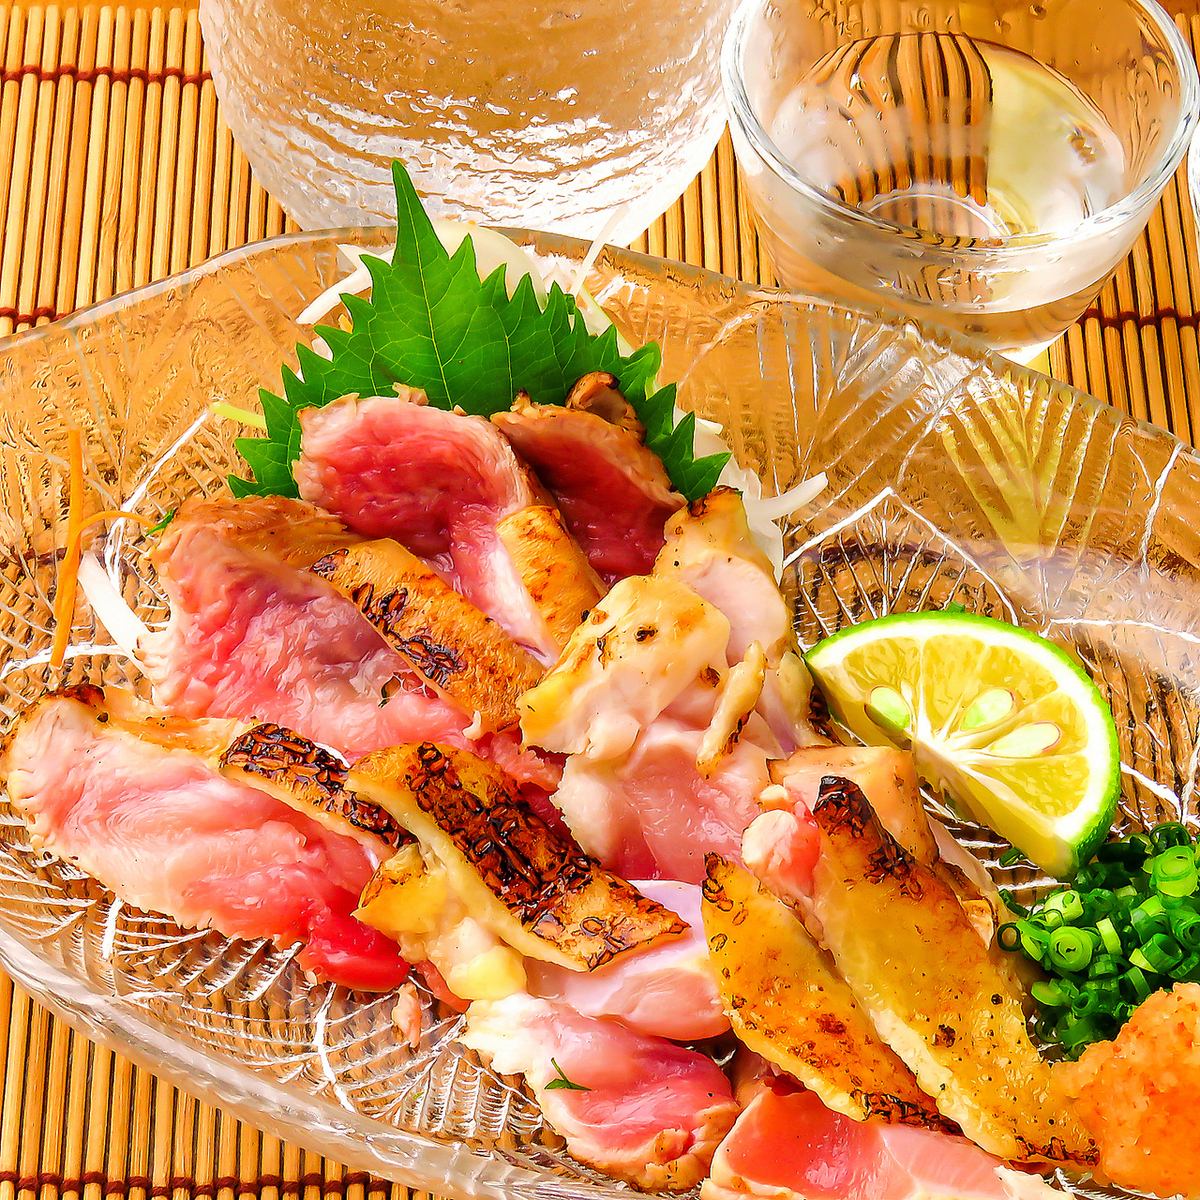 著名的“tataki土鸡”和“炭火烤鸡肉串”的肉质和风味都非常出色。